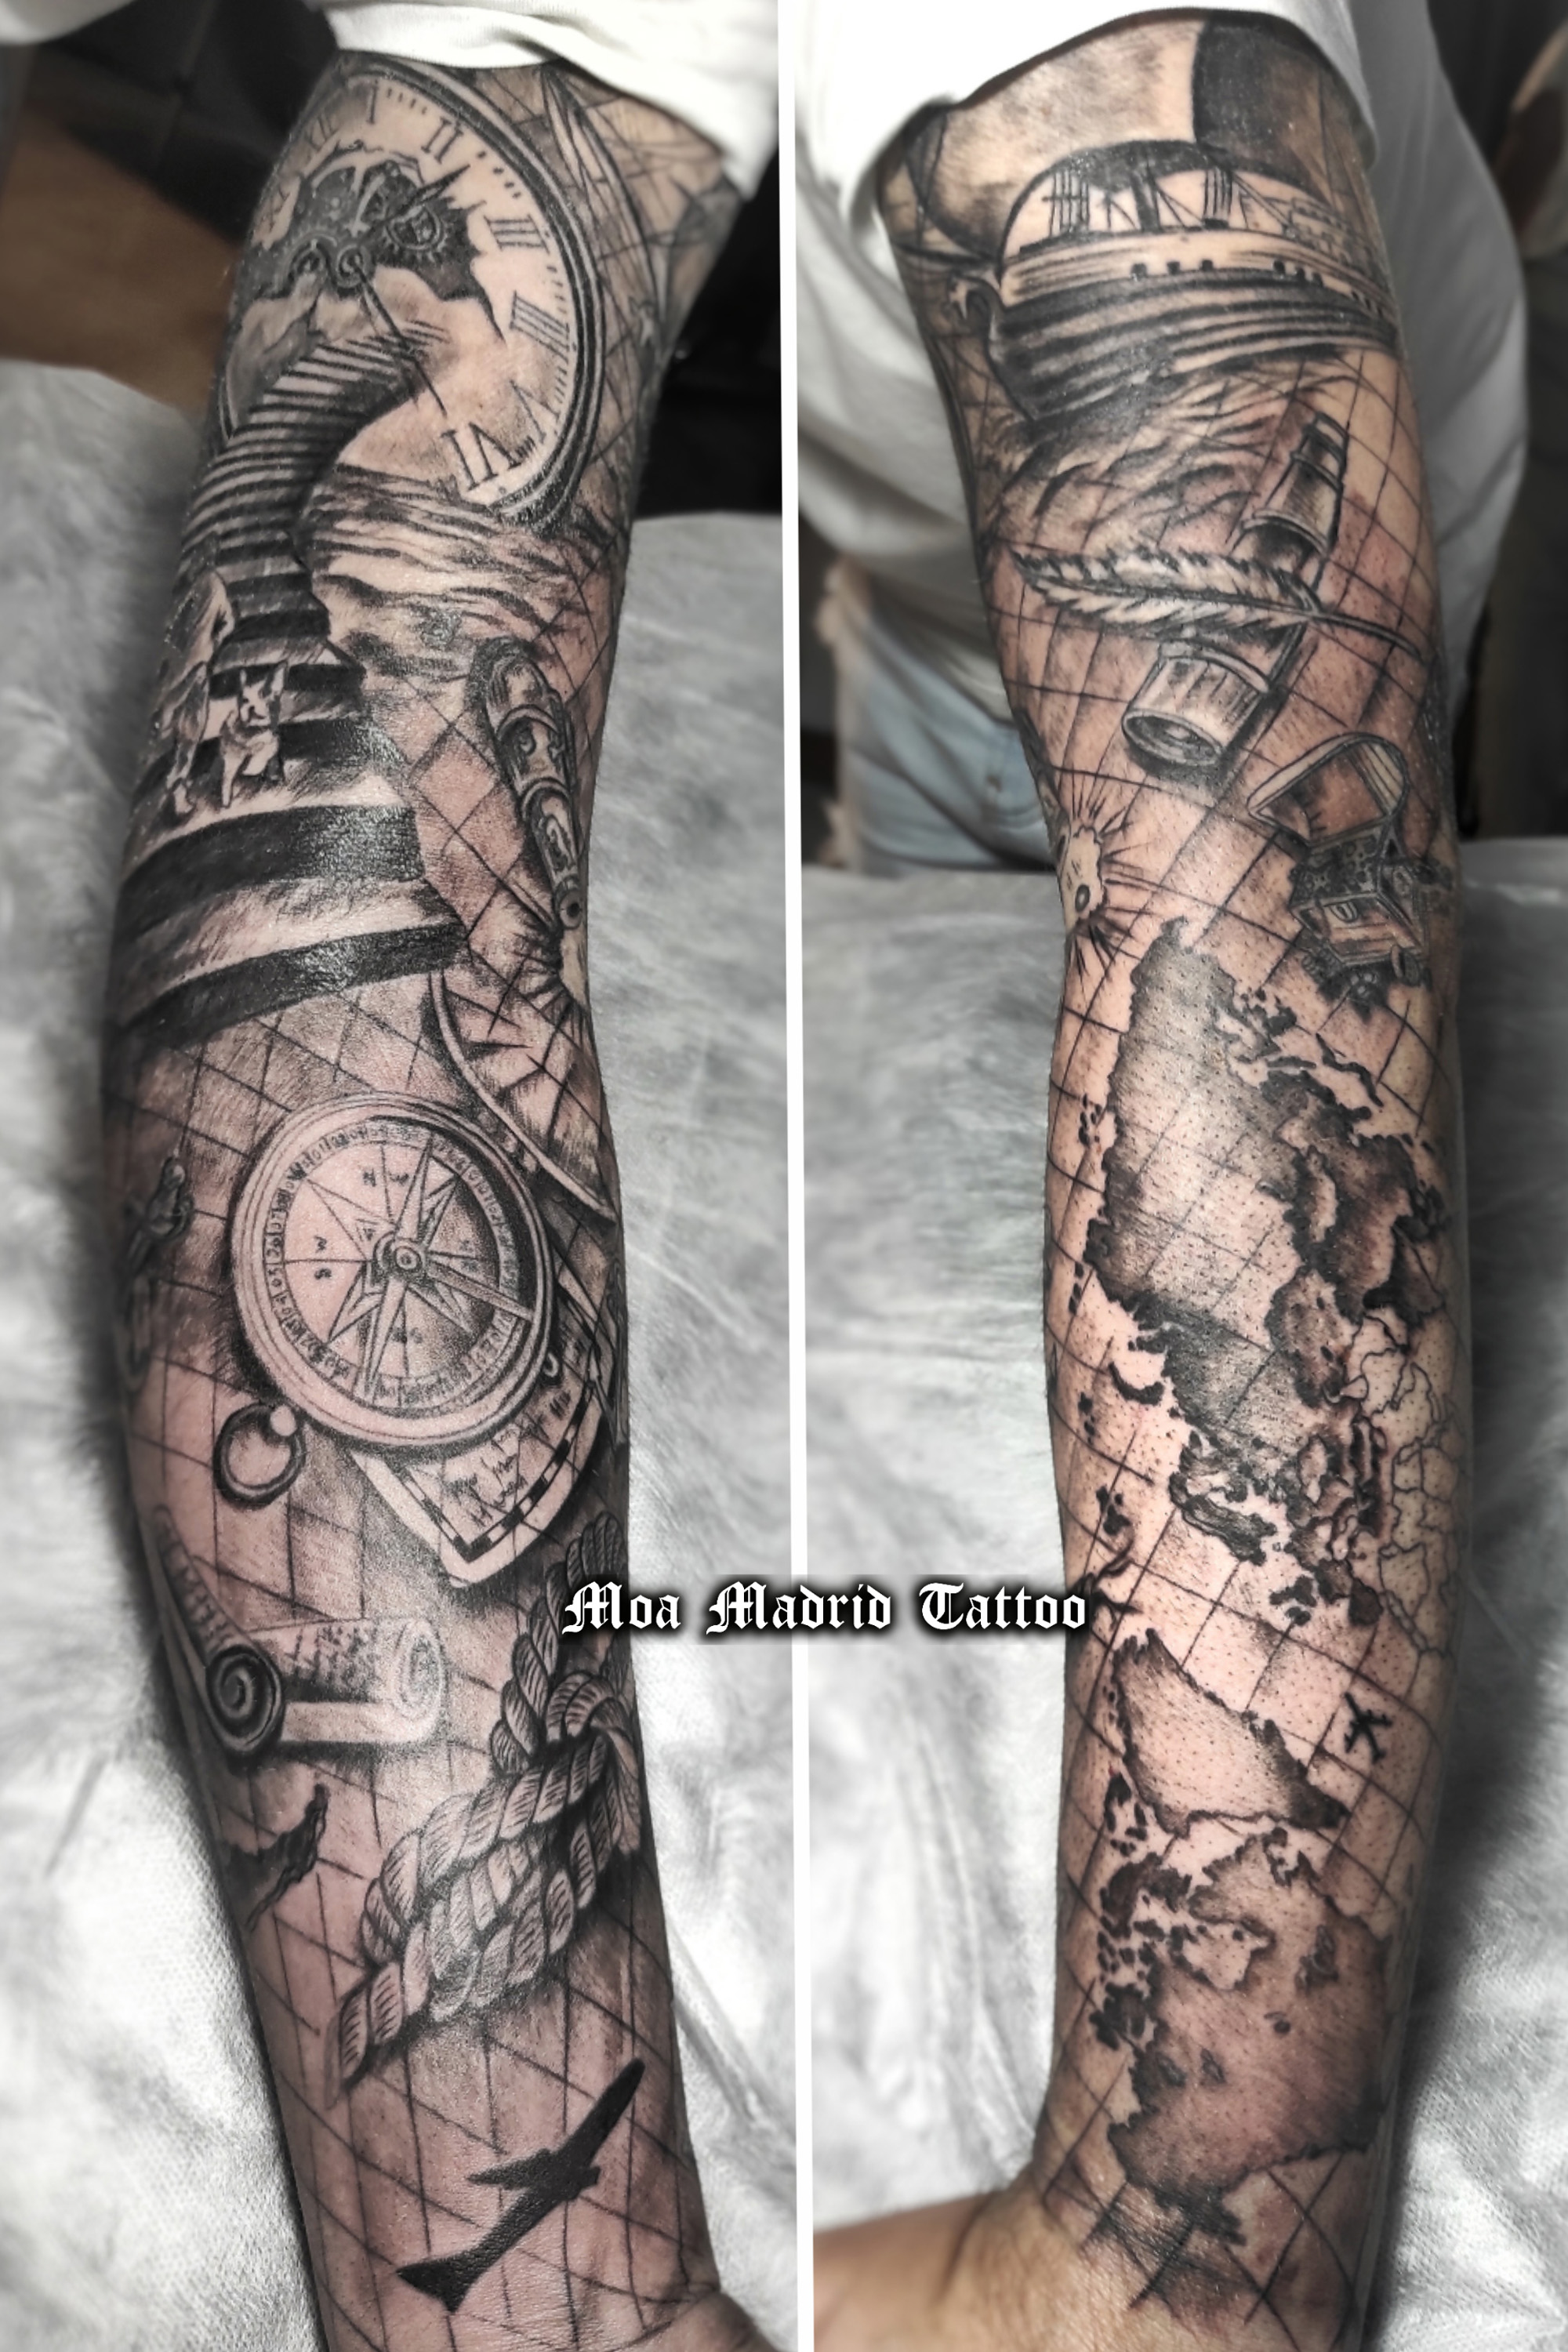 Todo el brazo tatuado en realismo de hombro a codo